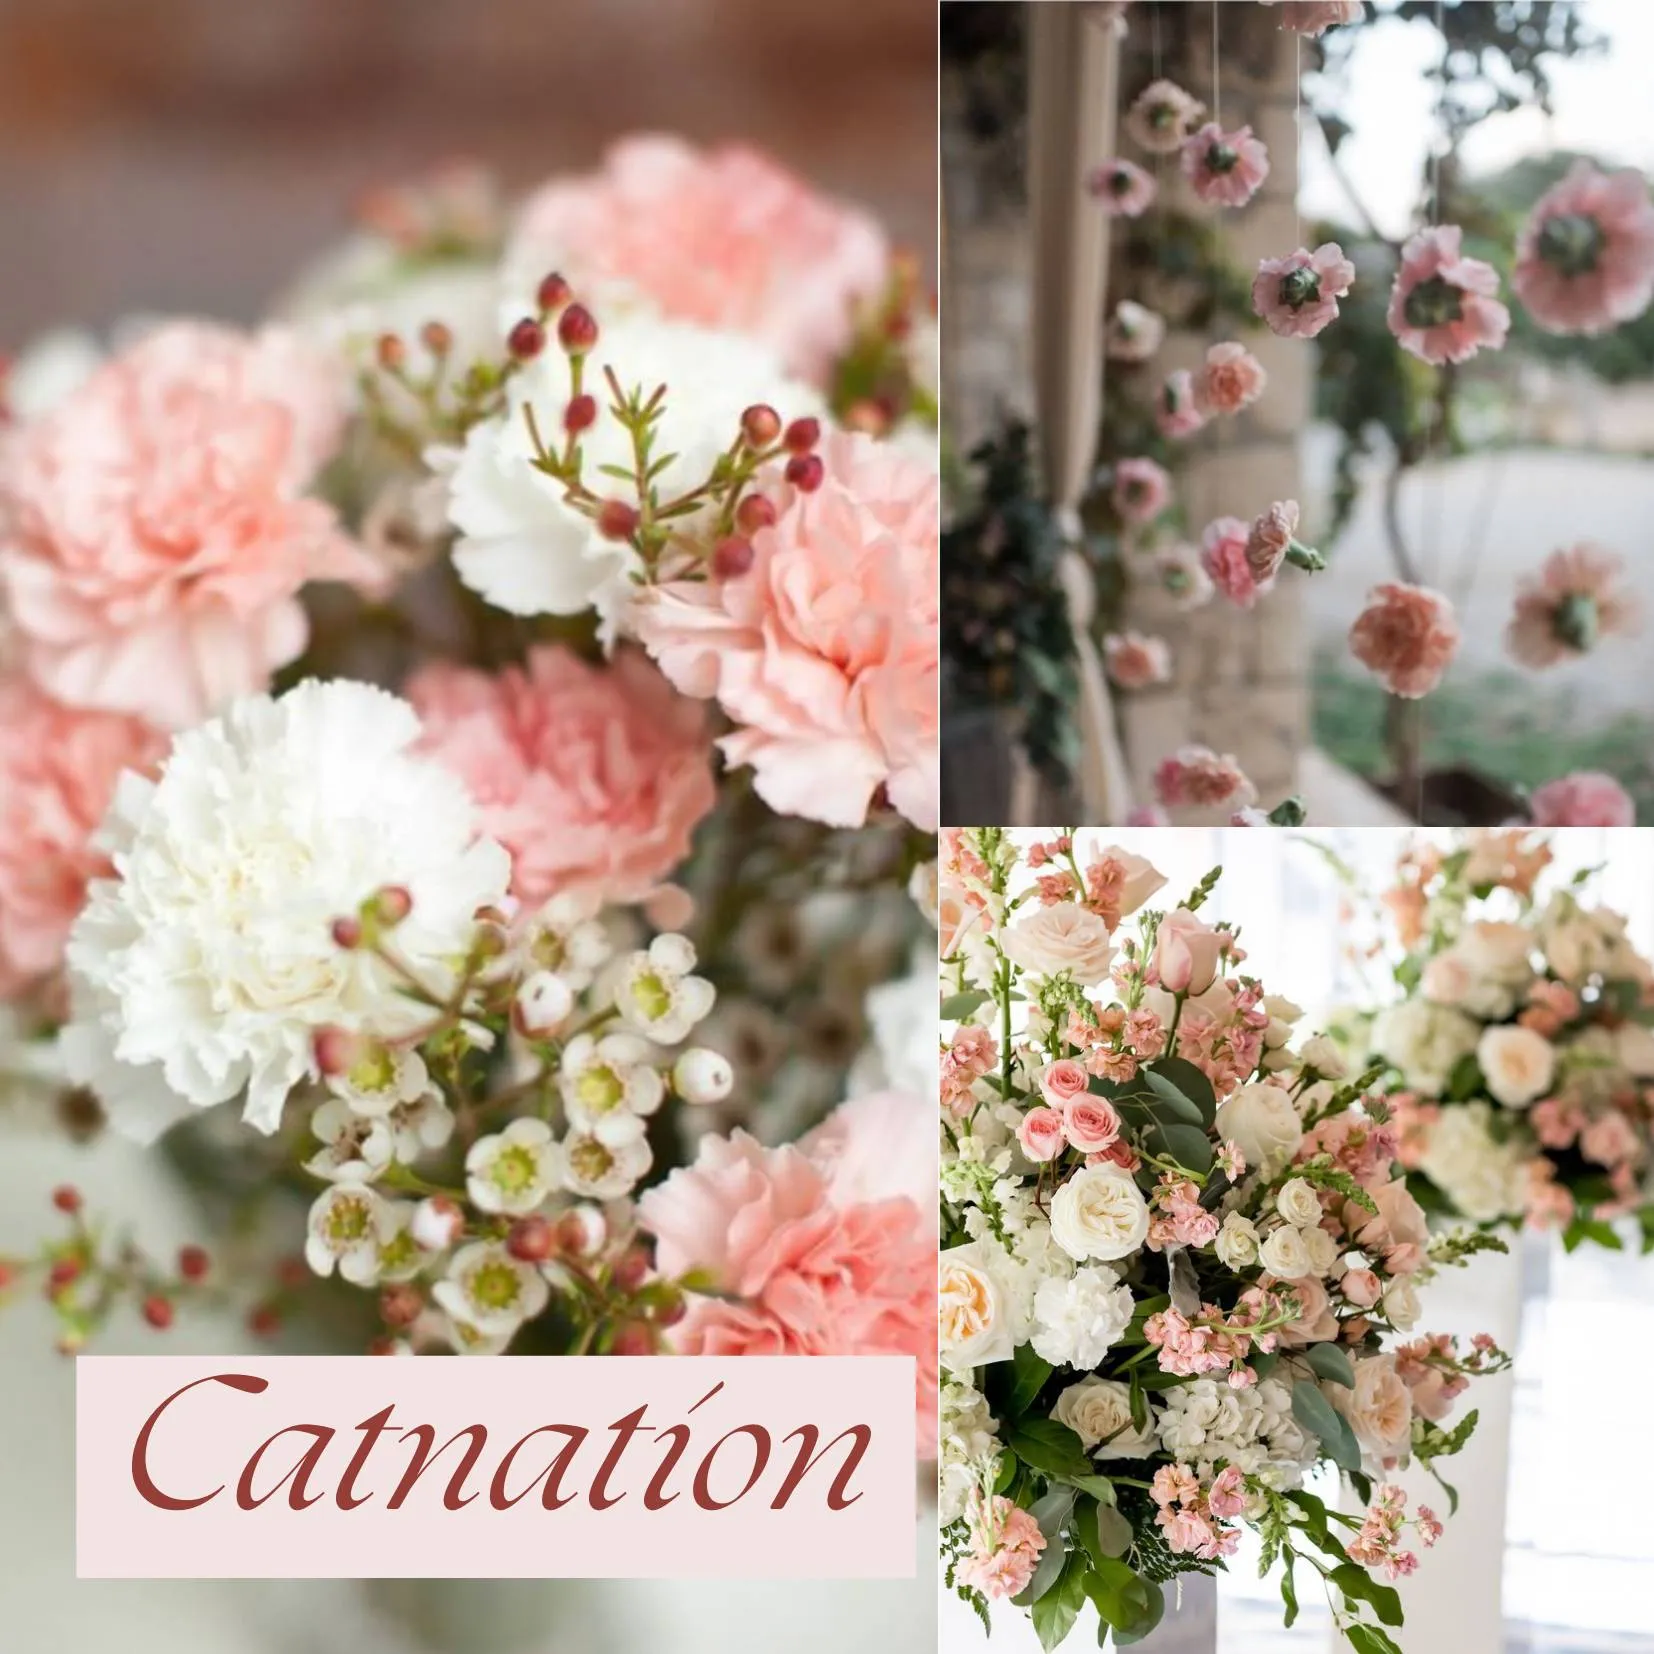 ดอกไม้ในวันแต่งงาน - คาร์เนชั่น (Carnation)